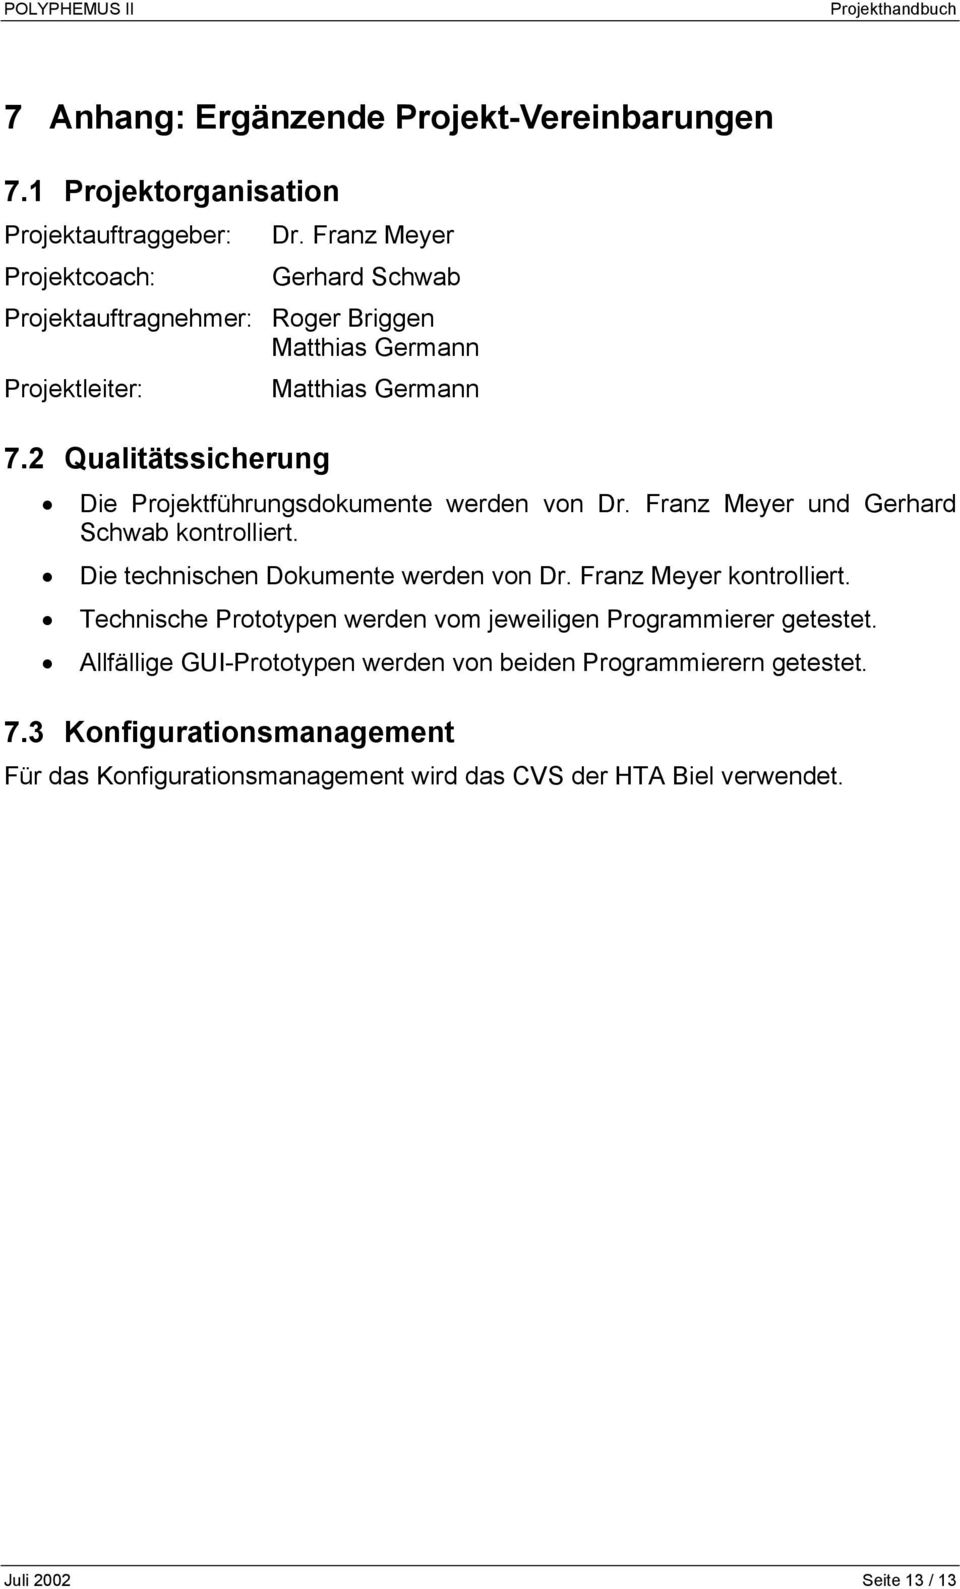 2 Qualitätssicherung Die Projektführungsdokumente werden von Dr. Franz Meyer und Gerhard Schwab kontrolliert. Die technischen Dokumente werden von Dr.